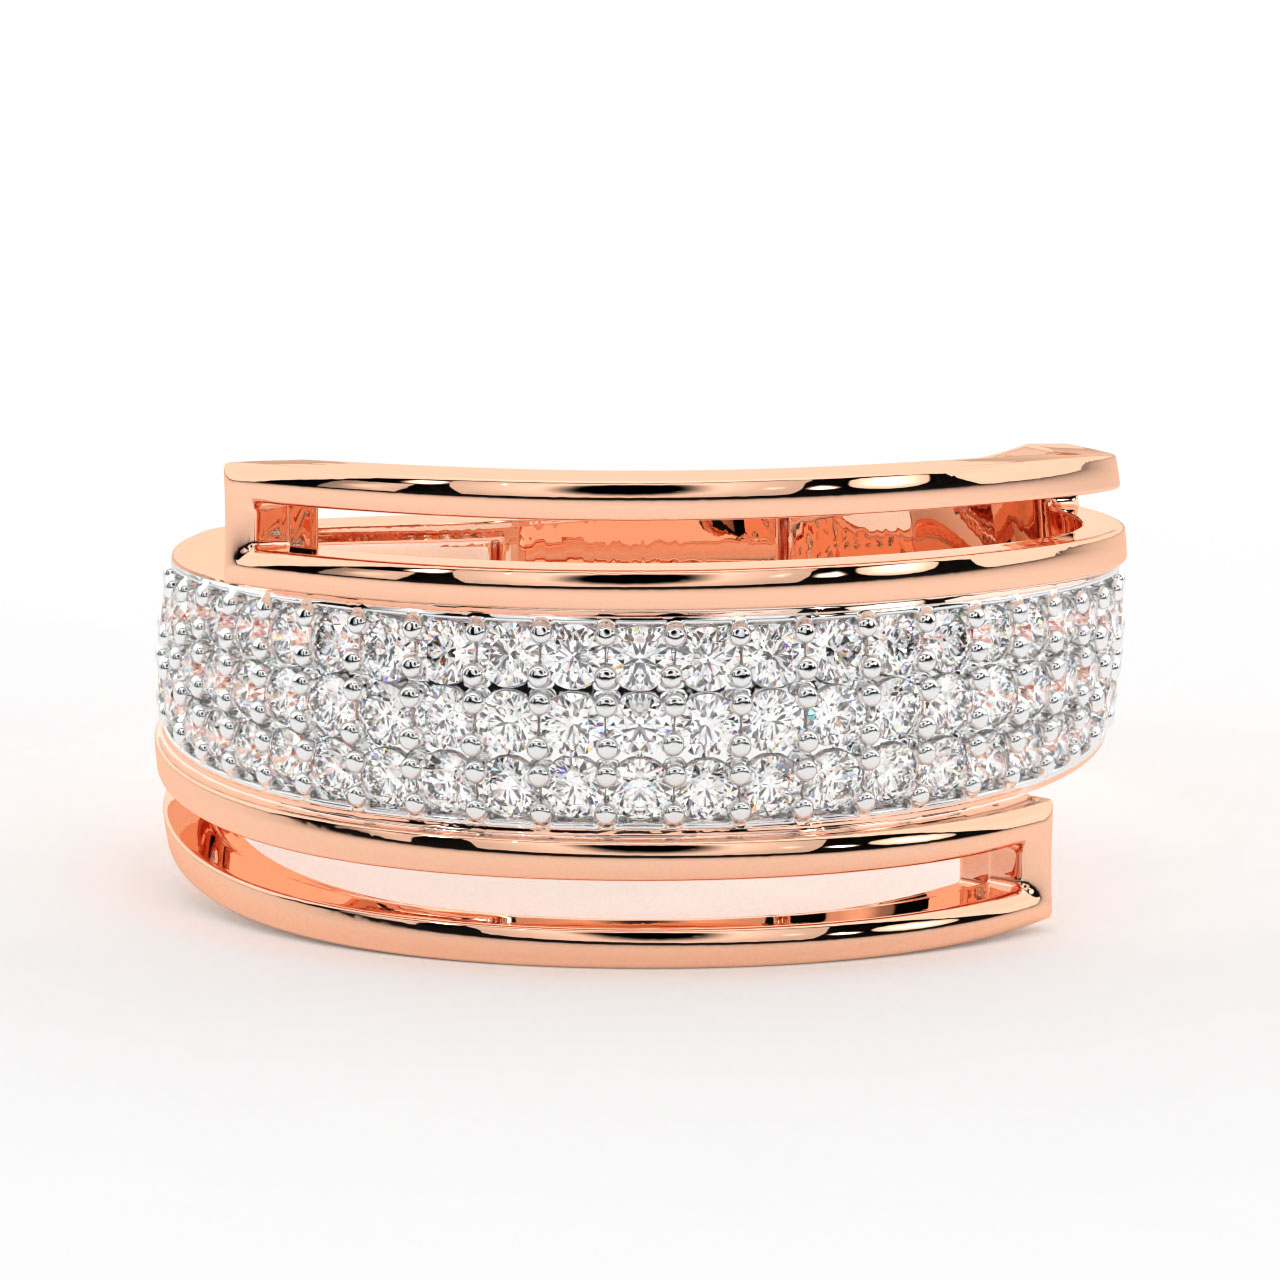 Kylee Round Diamond Engagement Ring